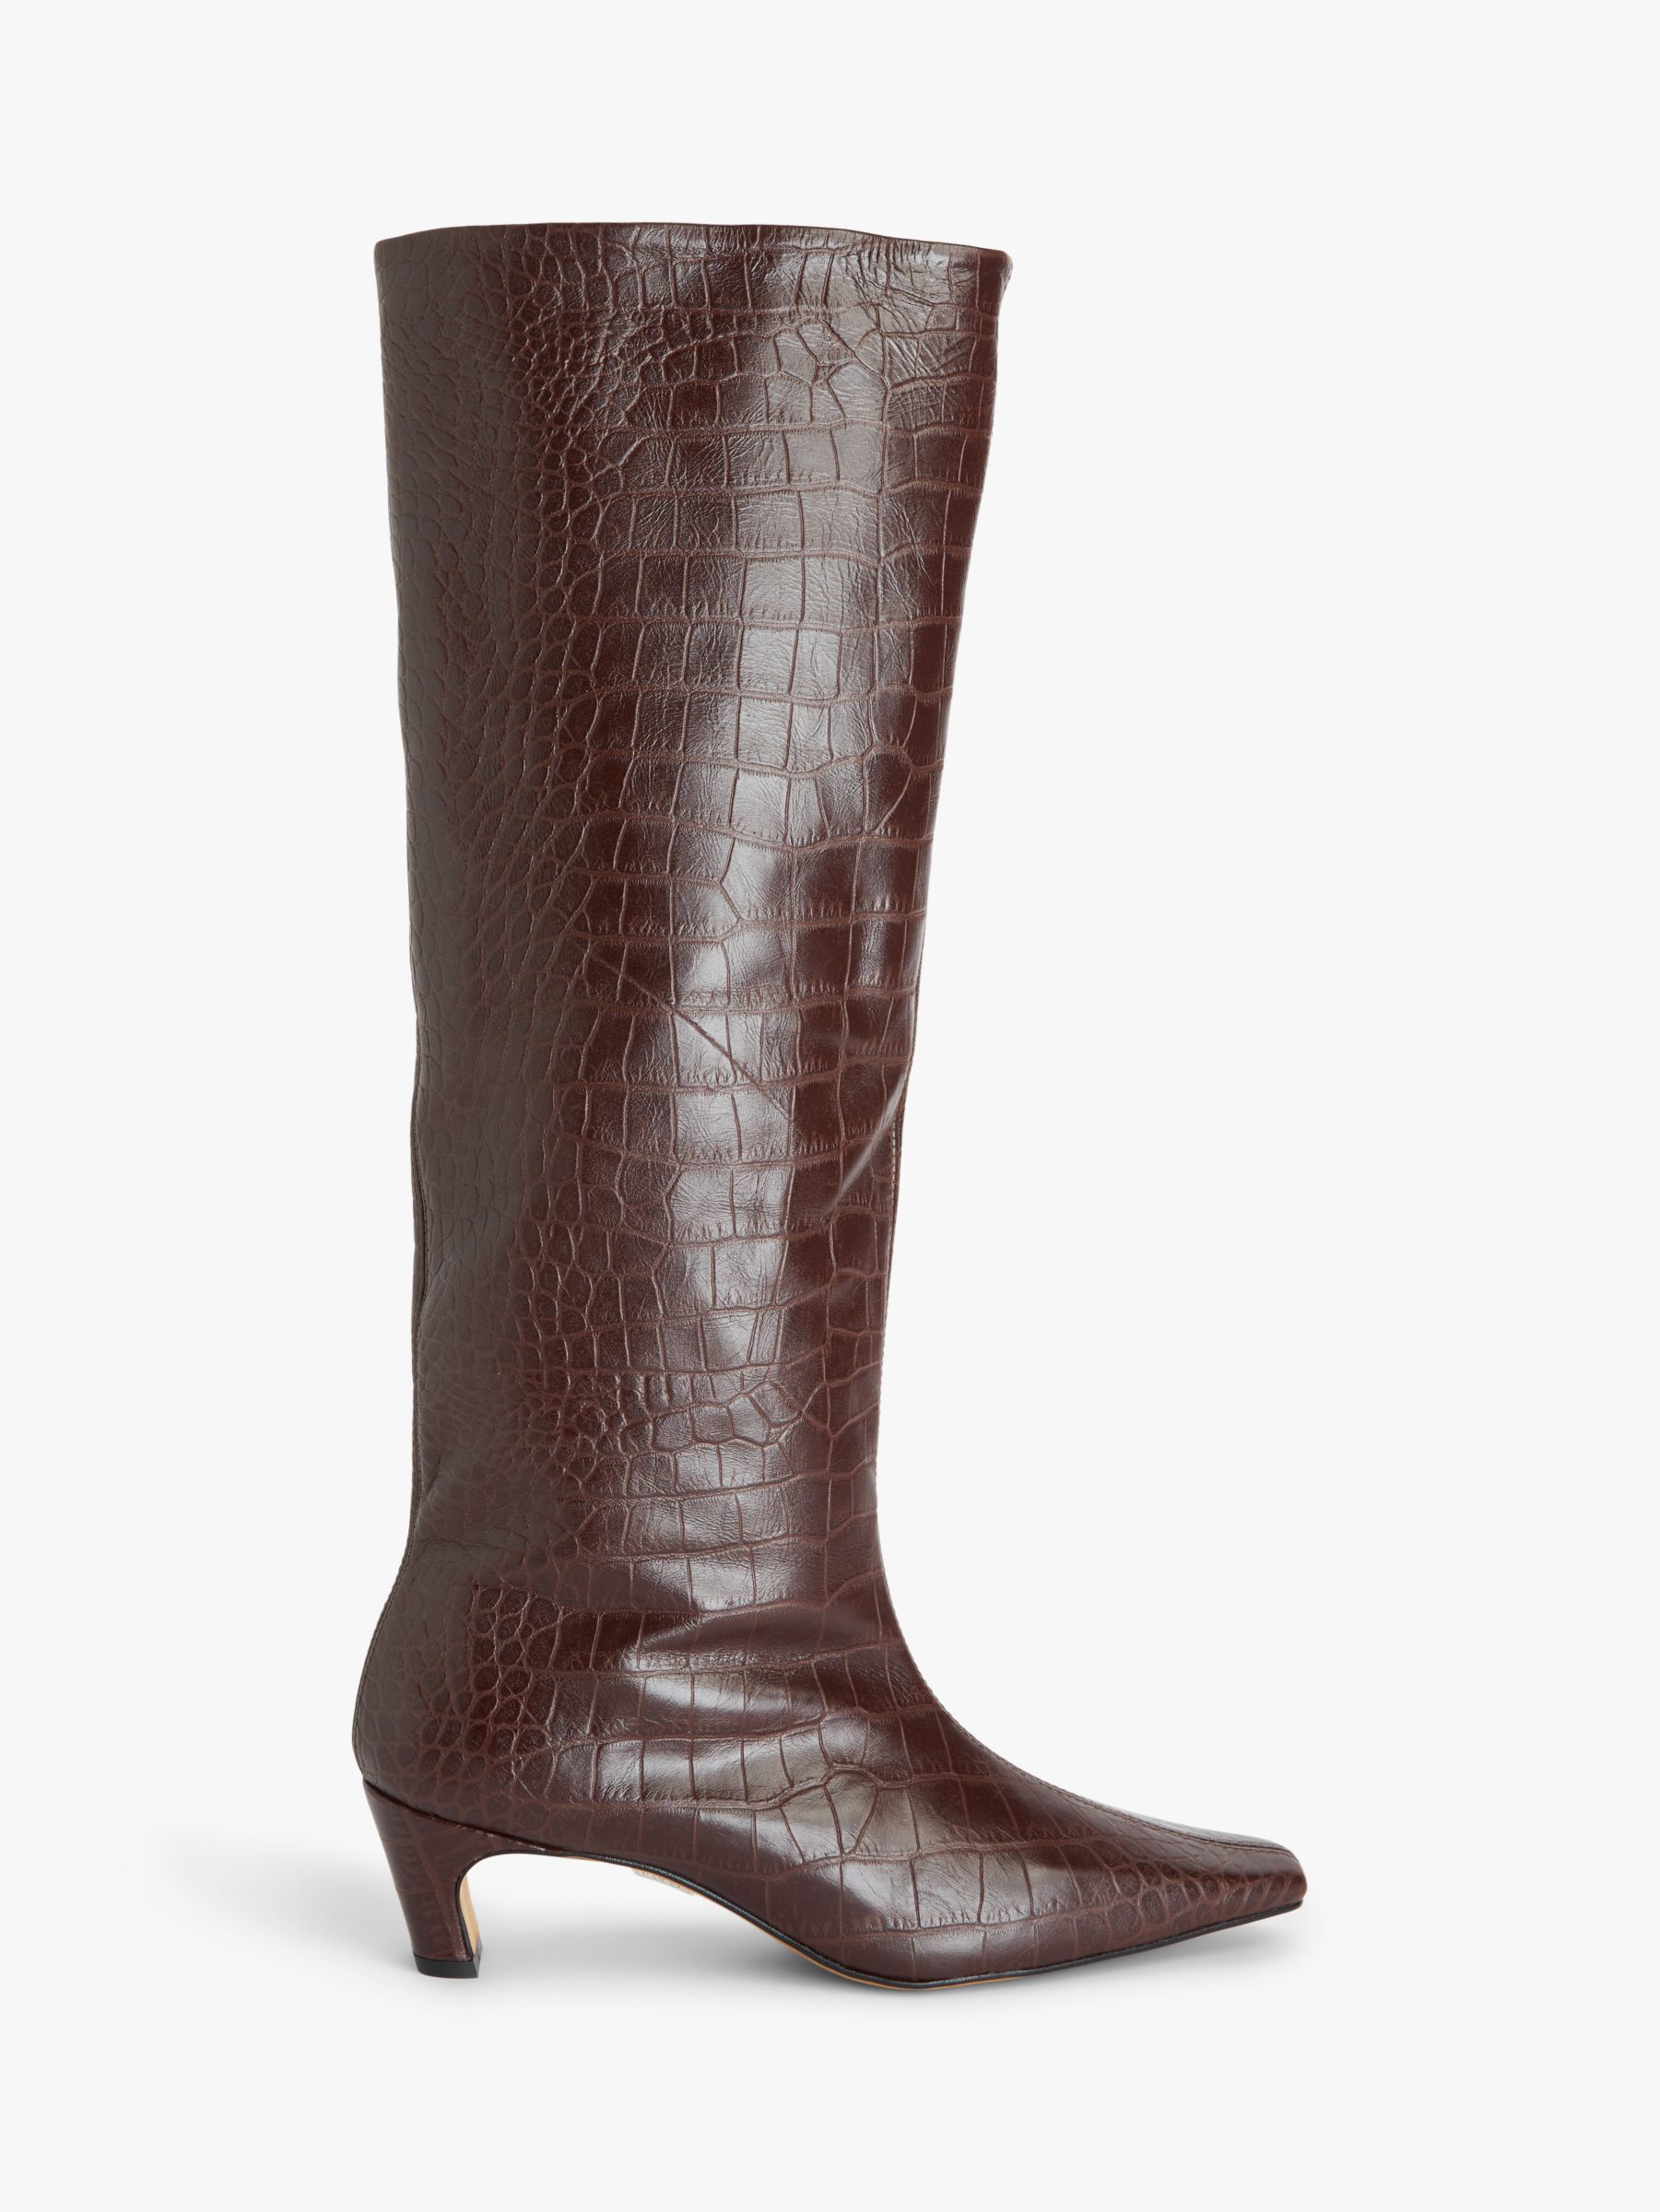 Кожаные сапоги до колена с долотообразным носком Sydnie John Lewis, шоколадный крокодил